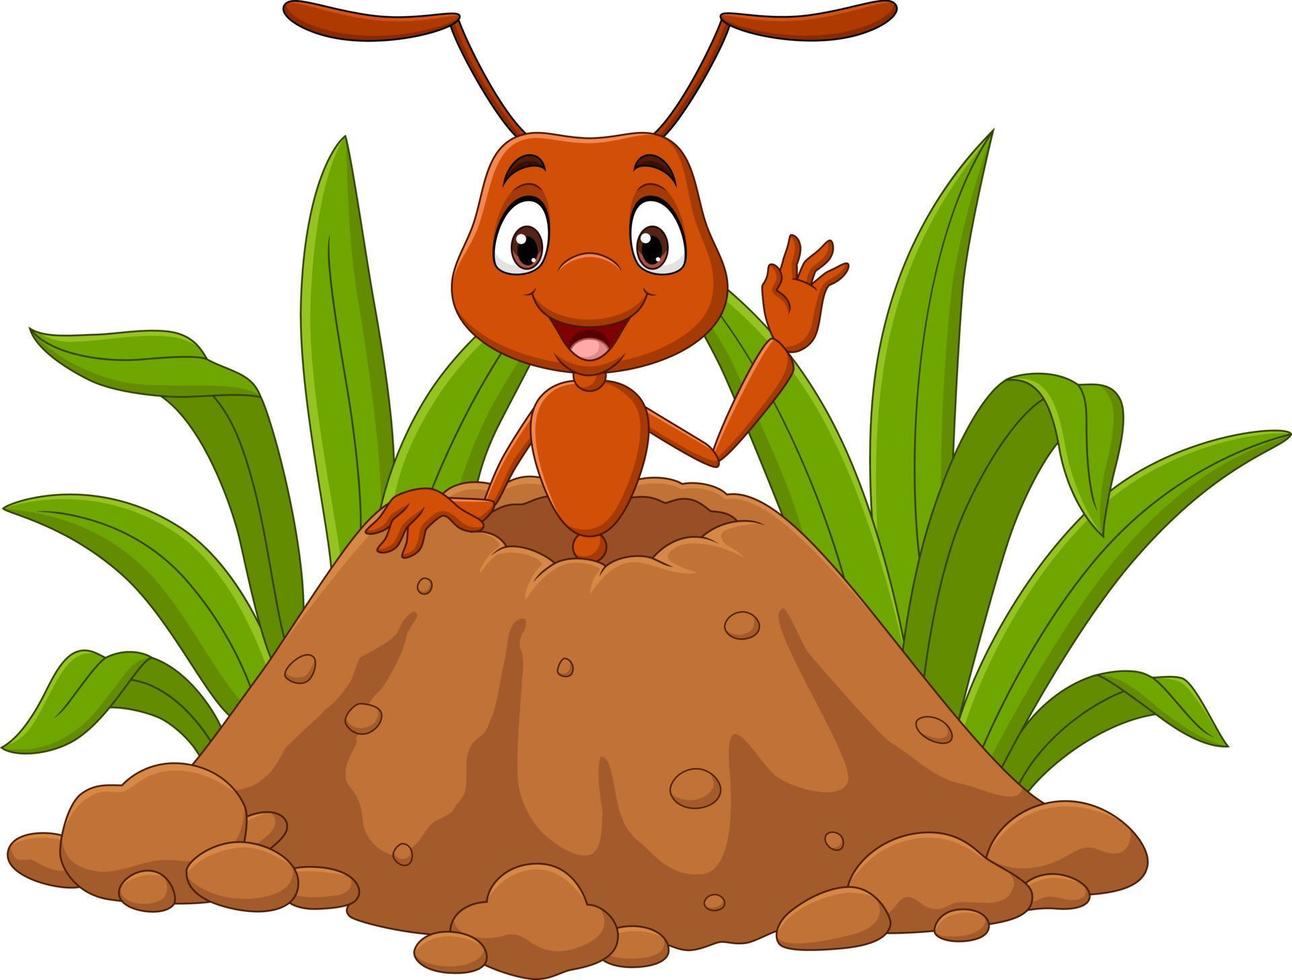 fourmis de dessin animé dans la fourmilière vecteur